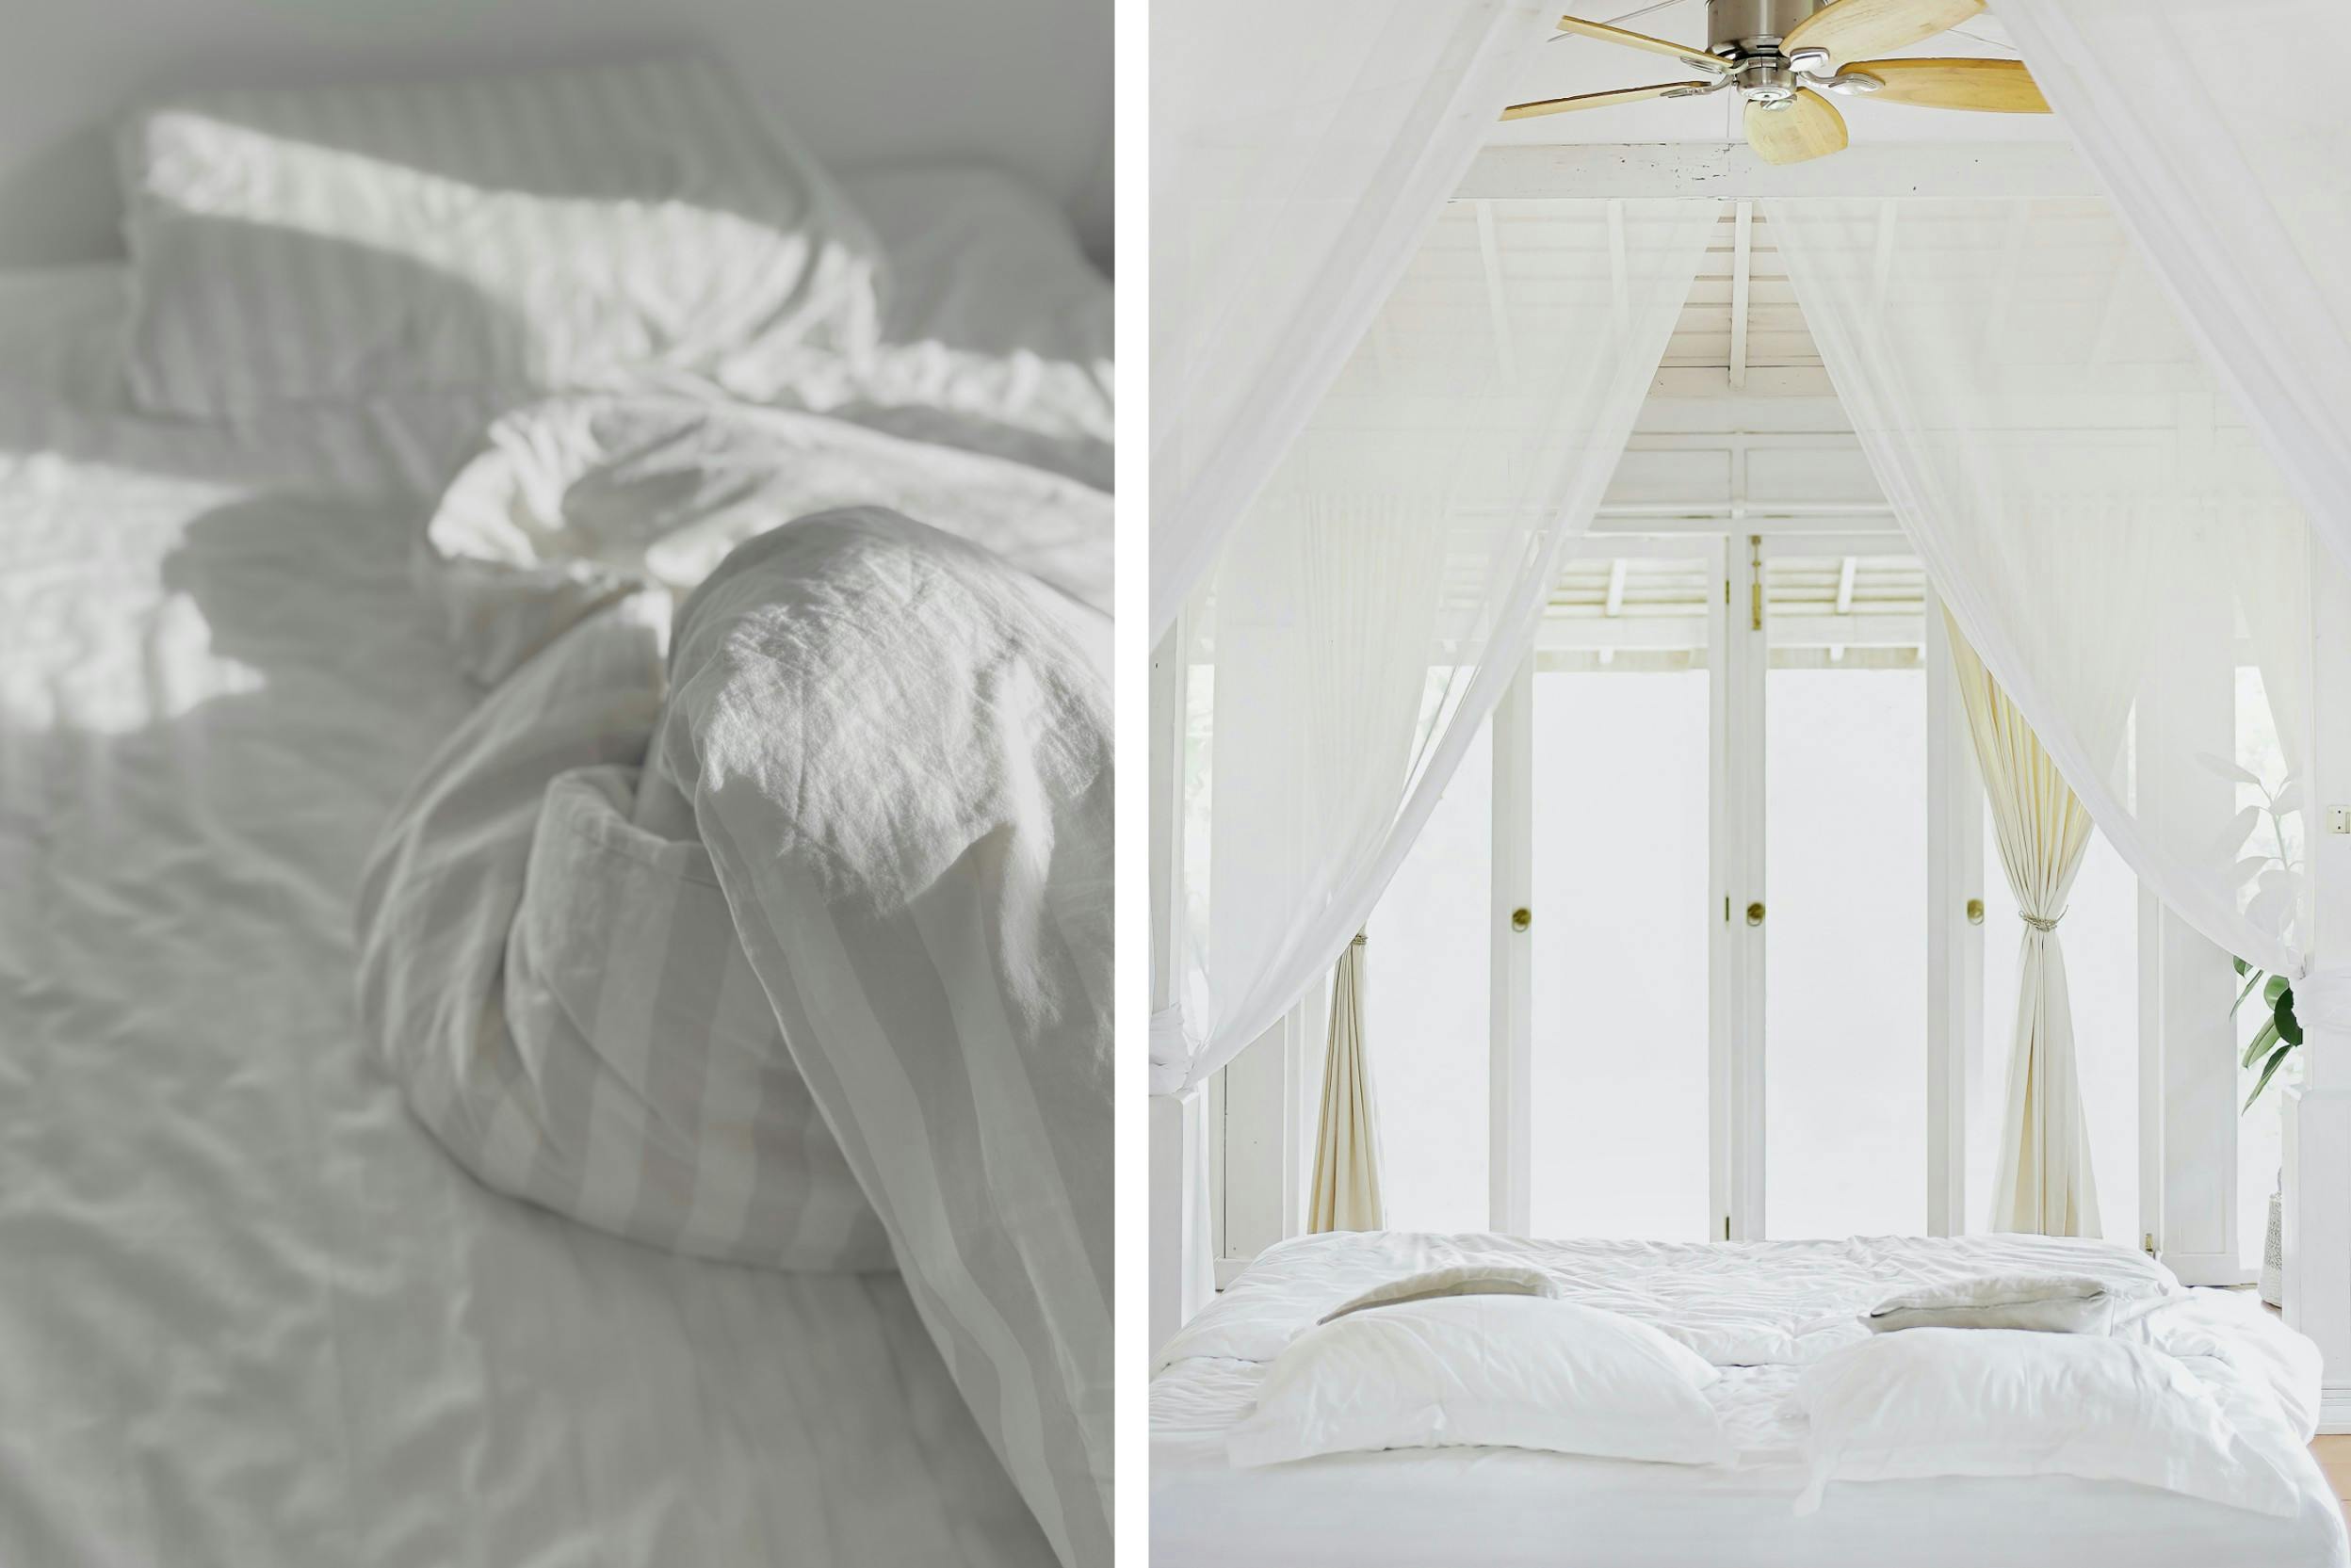 Bettwäsche aus Baumwolle in Grau-Weißen Streifen (links) und in Weiß auf Himmelbett (rechts). Bilder aus Unsplash.